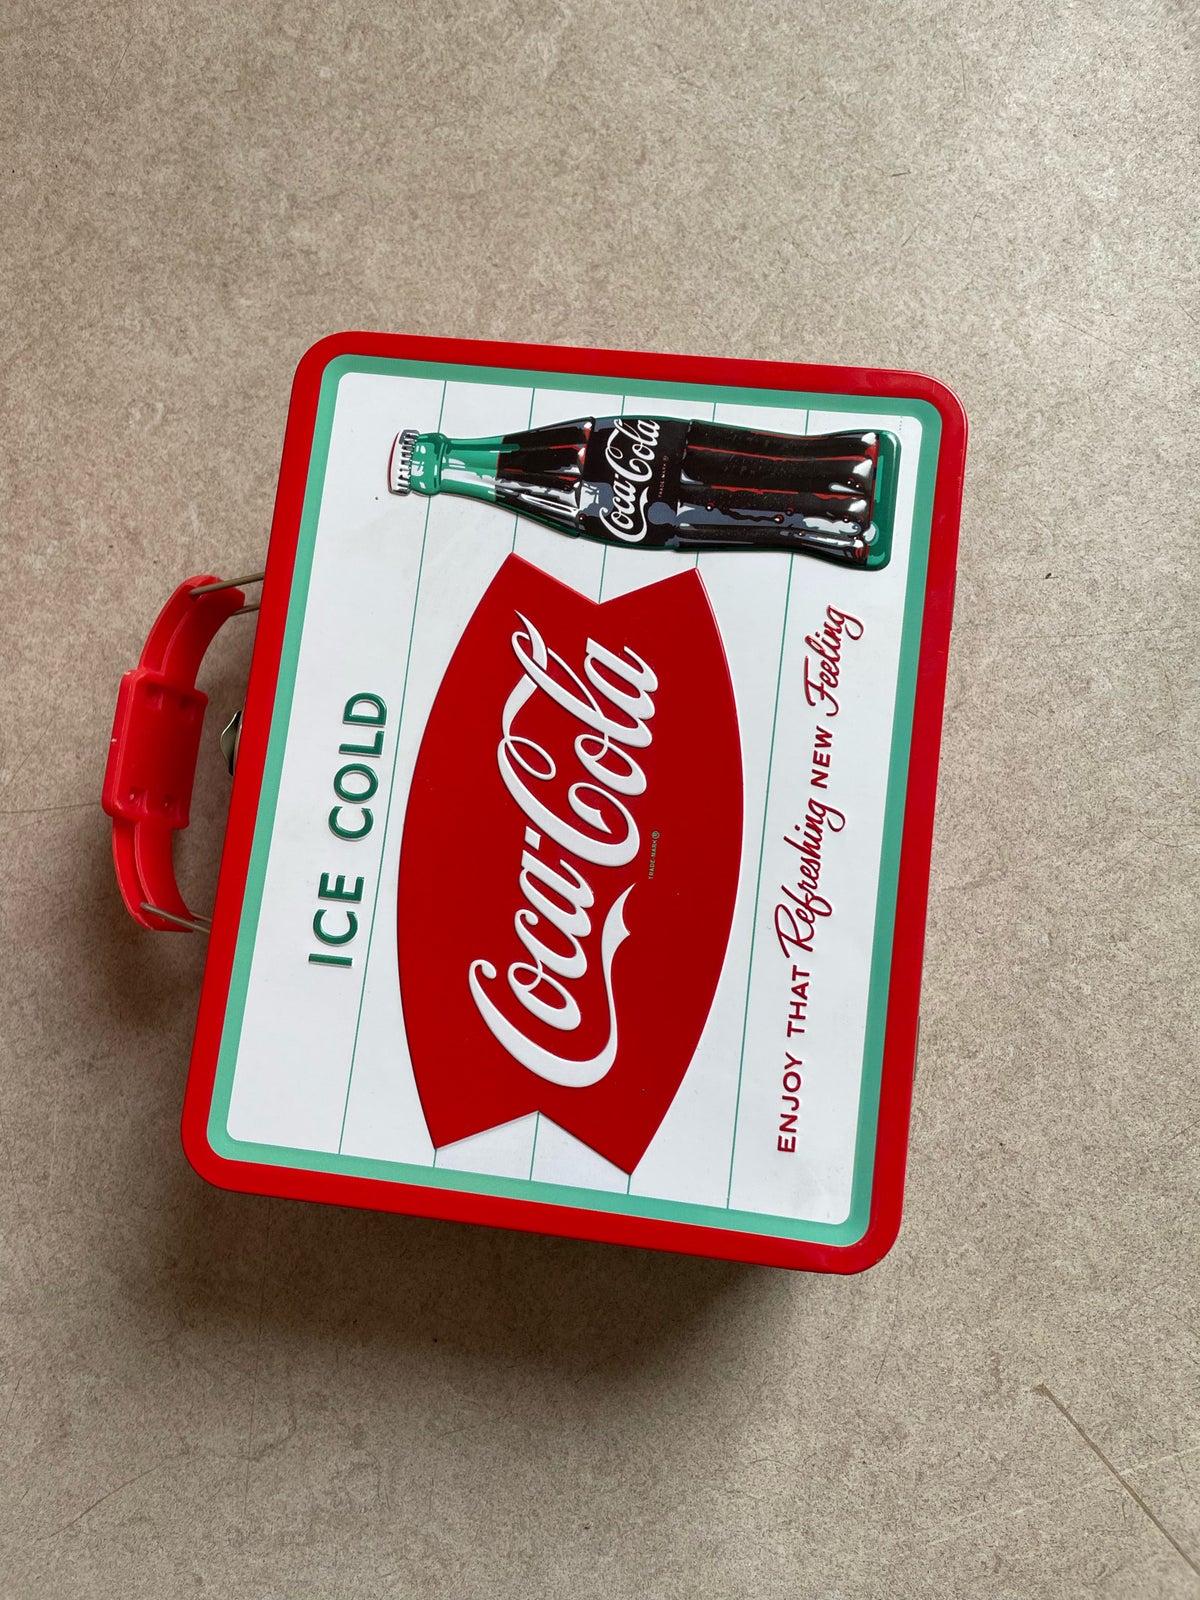 Mini Cooler, andet mærke Coca Cola minikøleskab, 4 liter